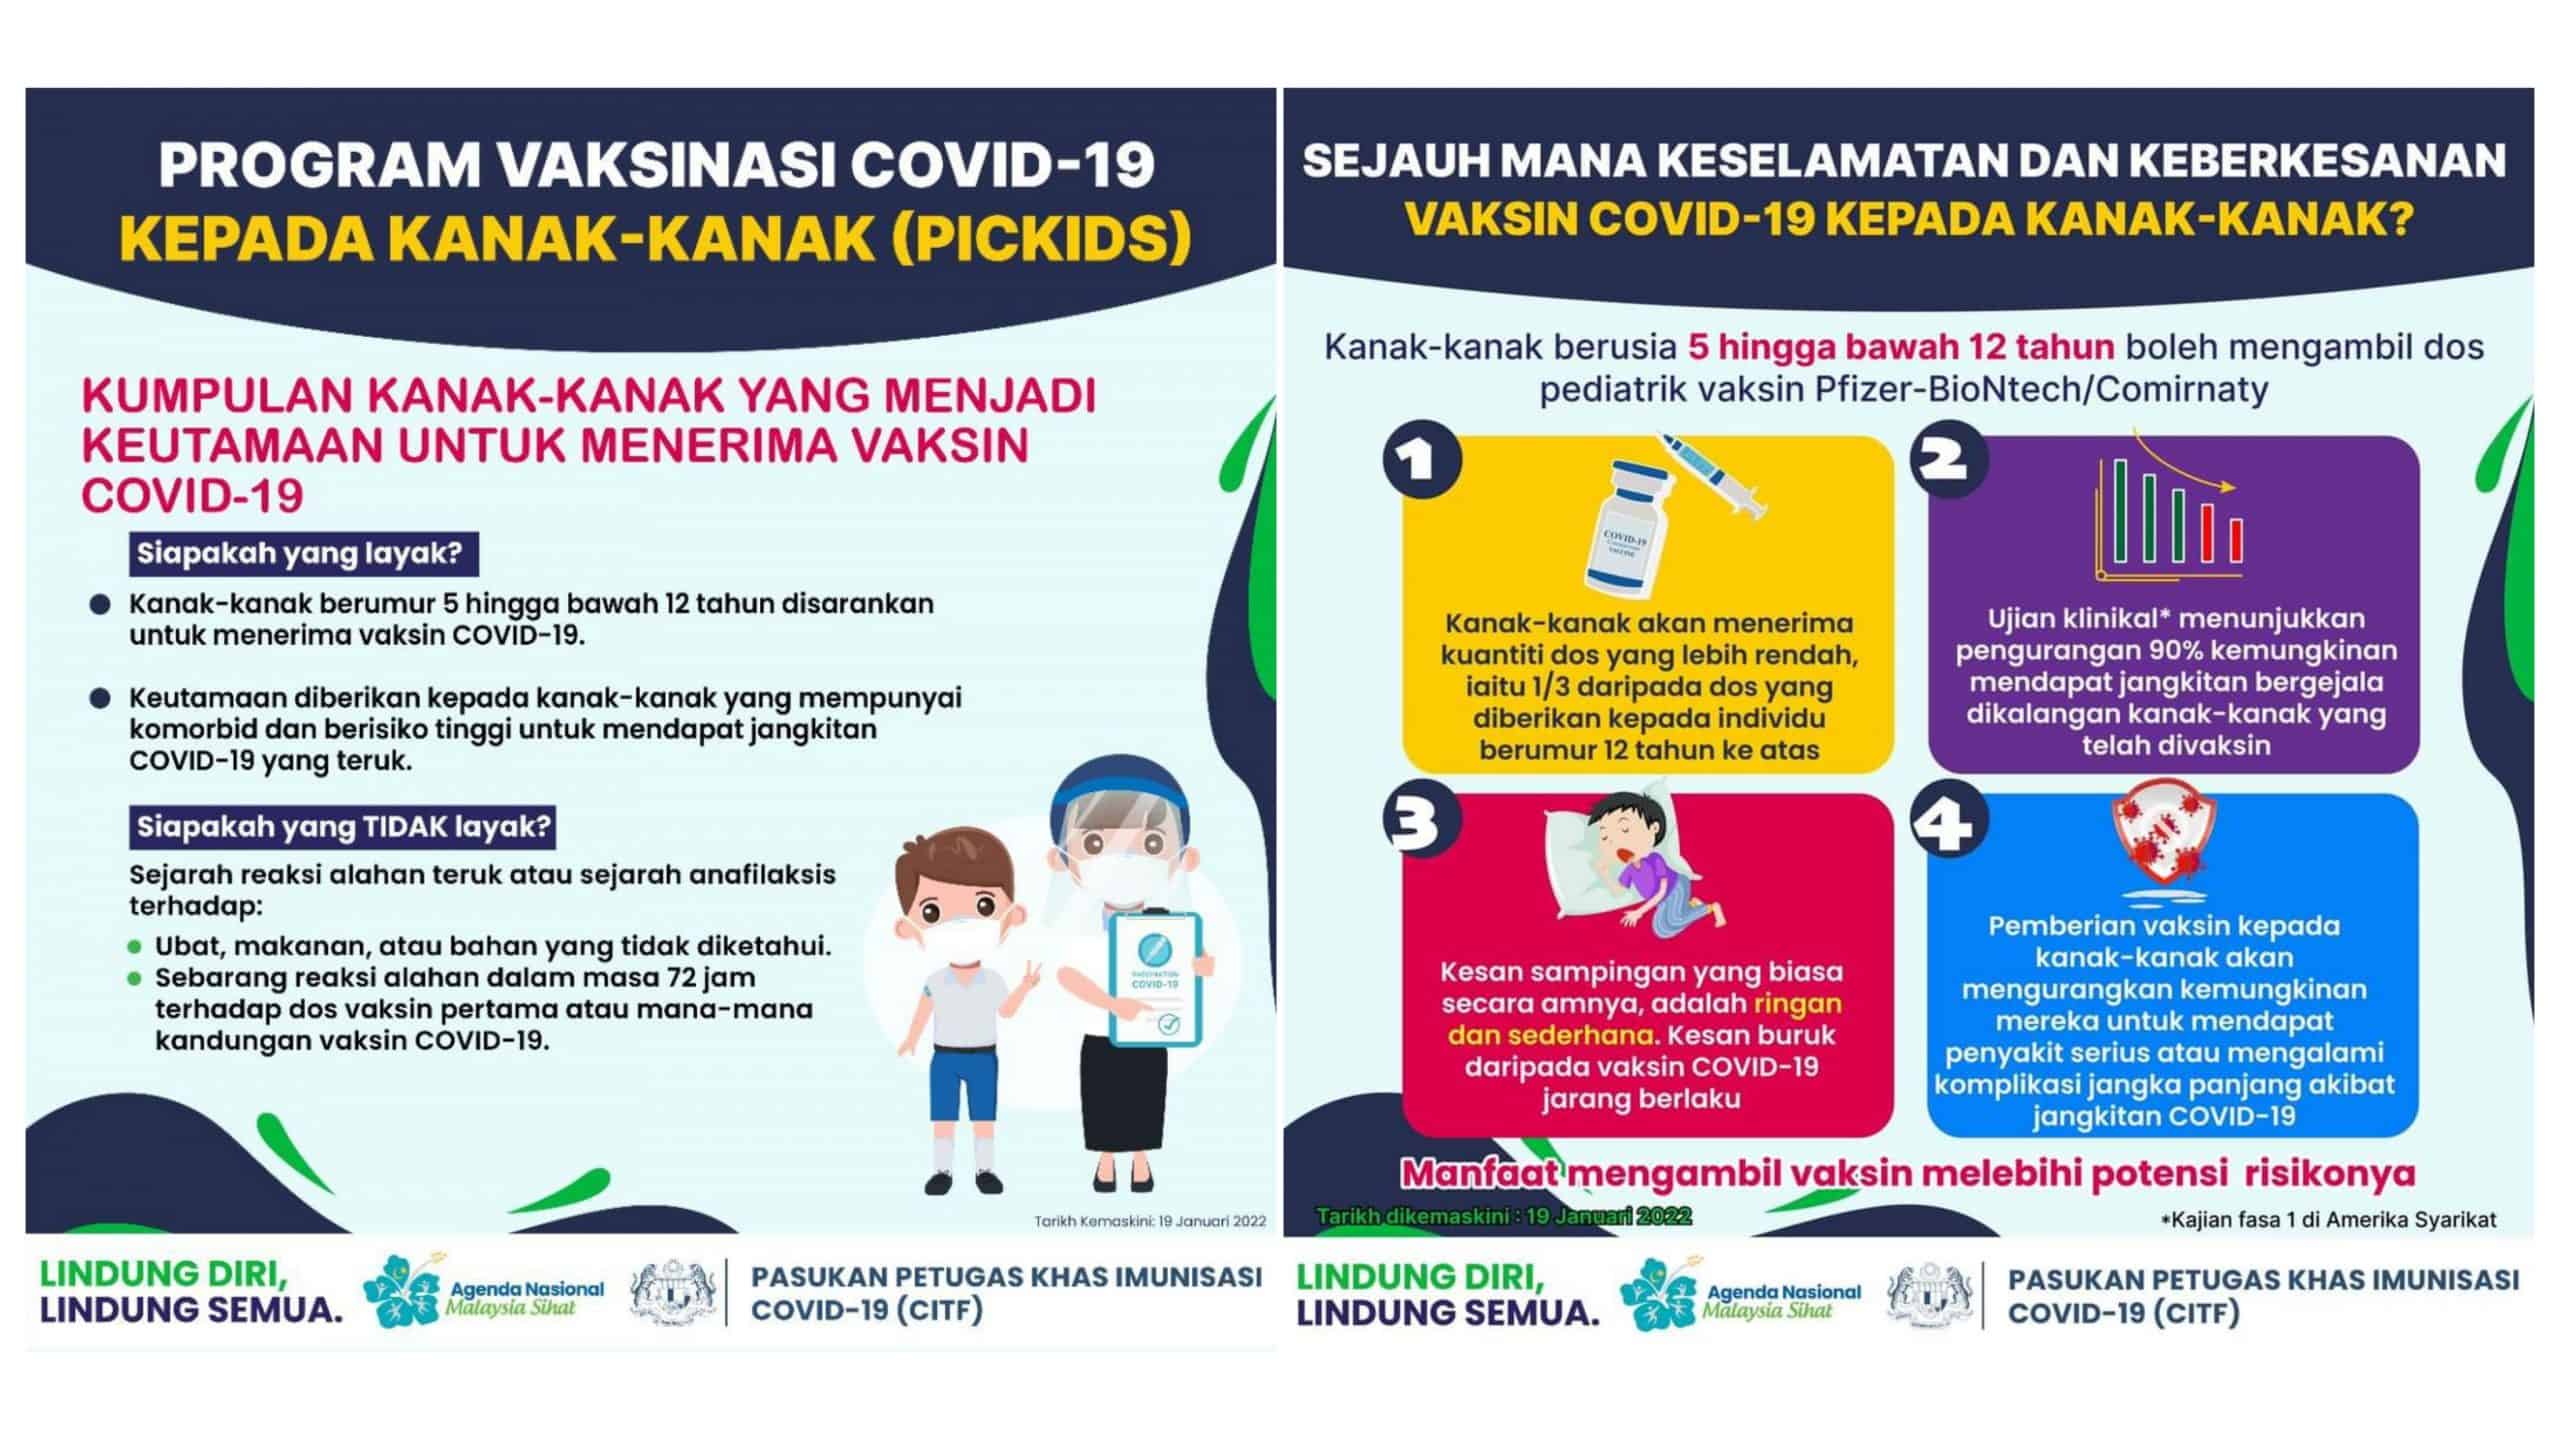 Apakah jenis vaksin covid 19 yang digunakan di malaysia